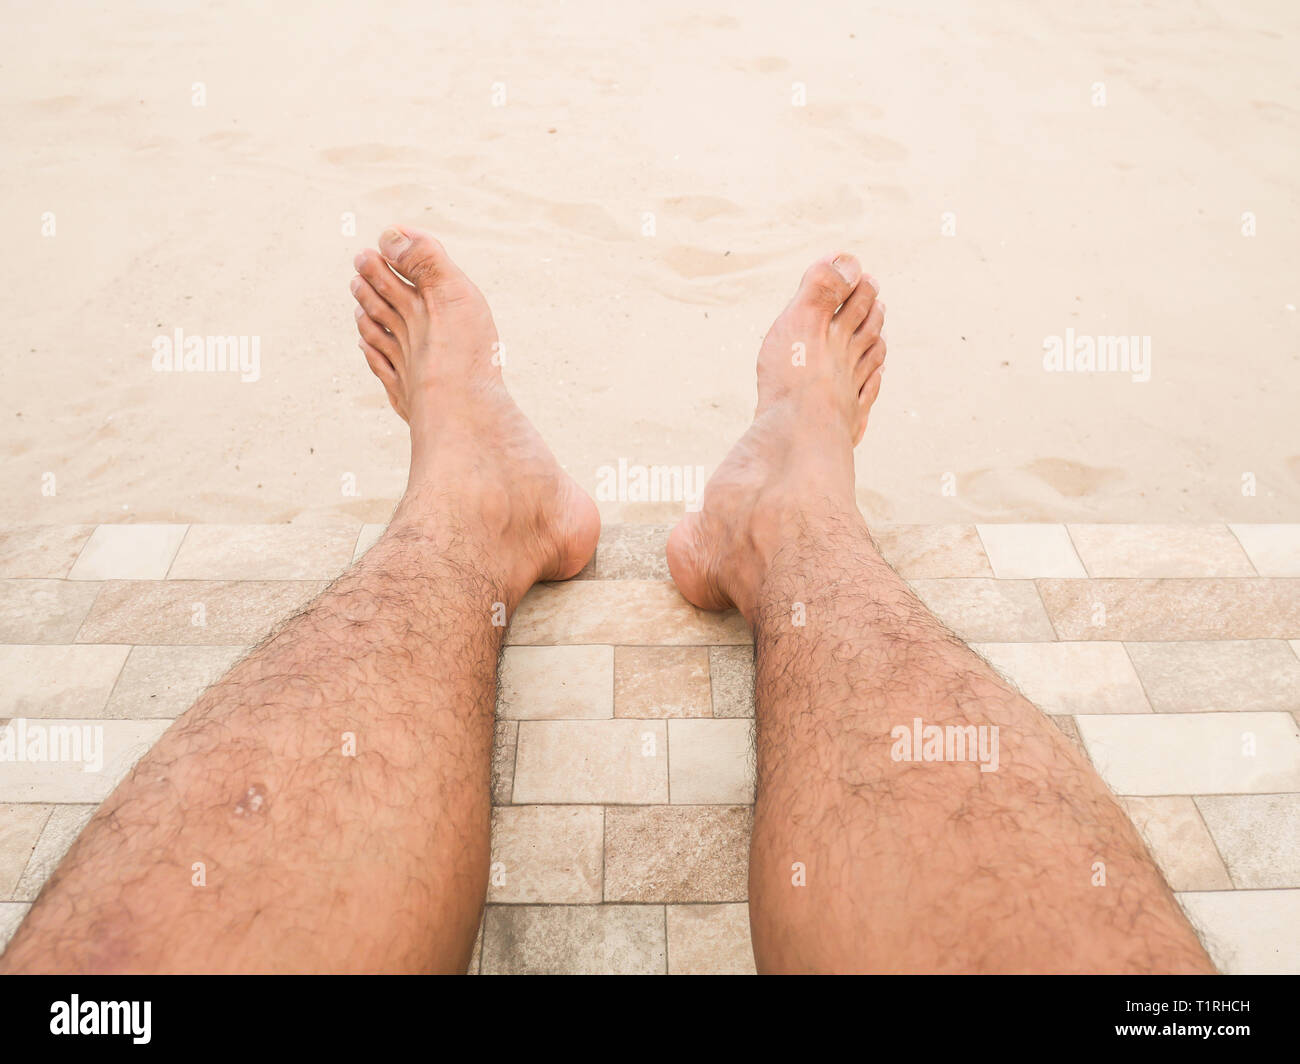 Mann ist entspannend barfuß am Strand. Nahaufnahme Beine haut Asien Mann und Männer behaarte Beine auf Sand Hintergrund. Guy's Beine in den Sand. Stockfoto